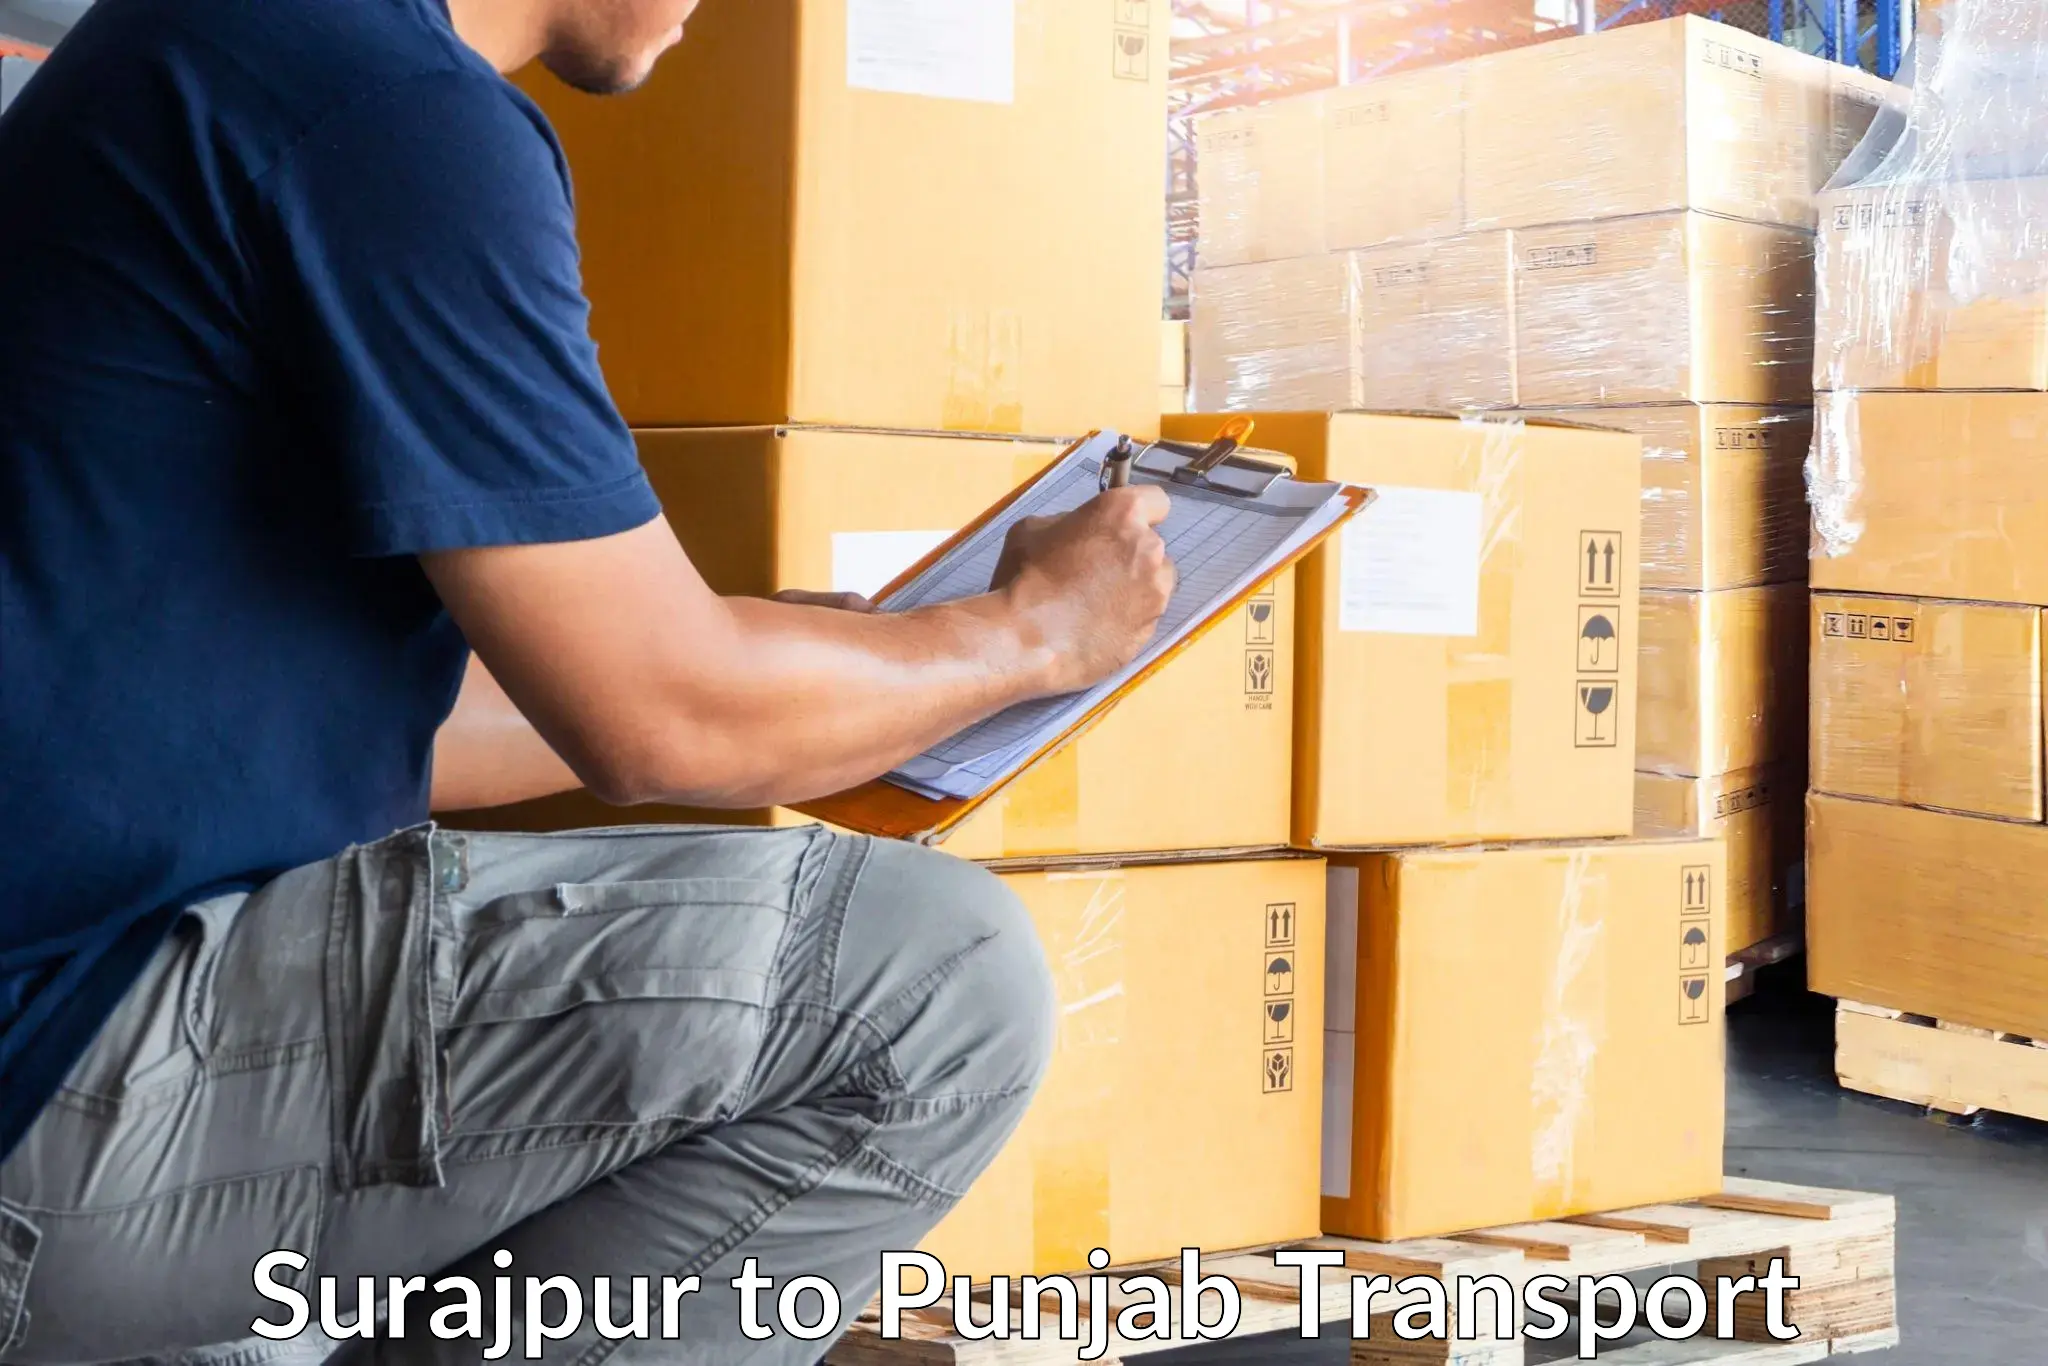 Delivery service Surajpur to Bathinda